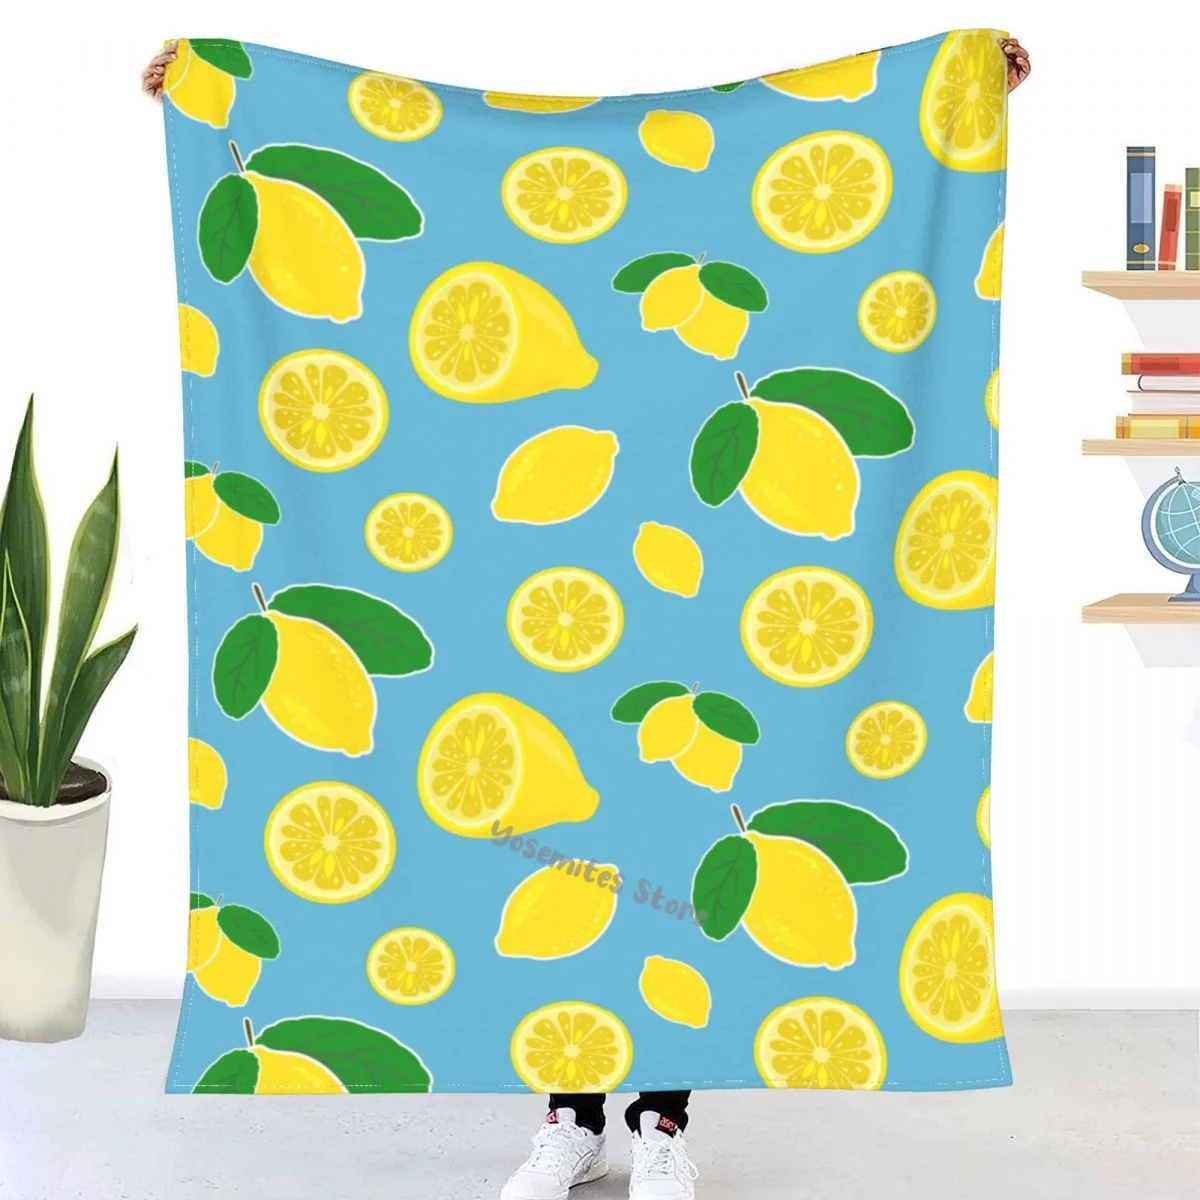 

Flower Lemon Pineapple Fruit Leaves Throw Blanket Sherpa Blanket Bedding soft bed Blankets